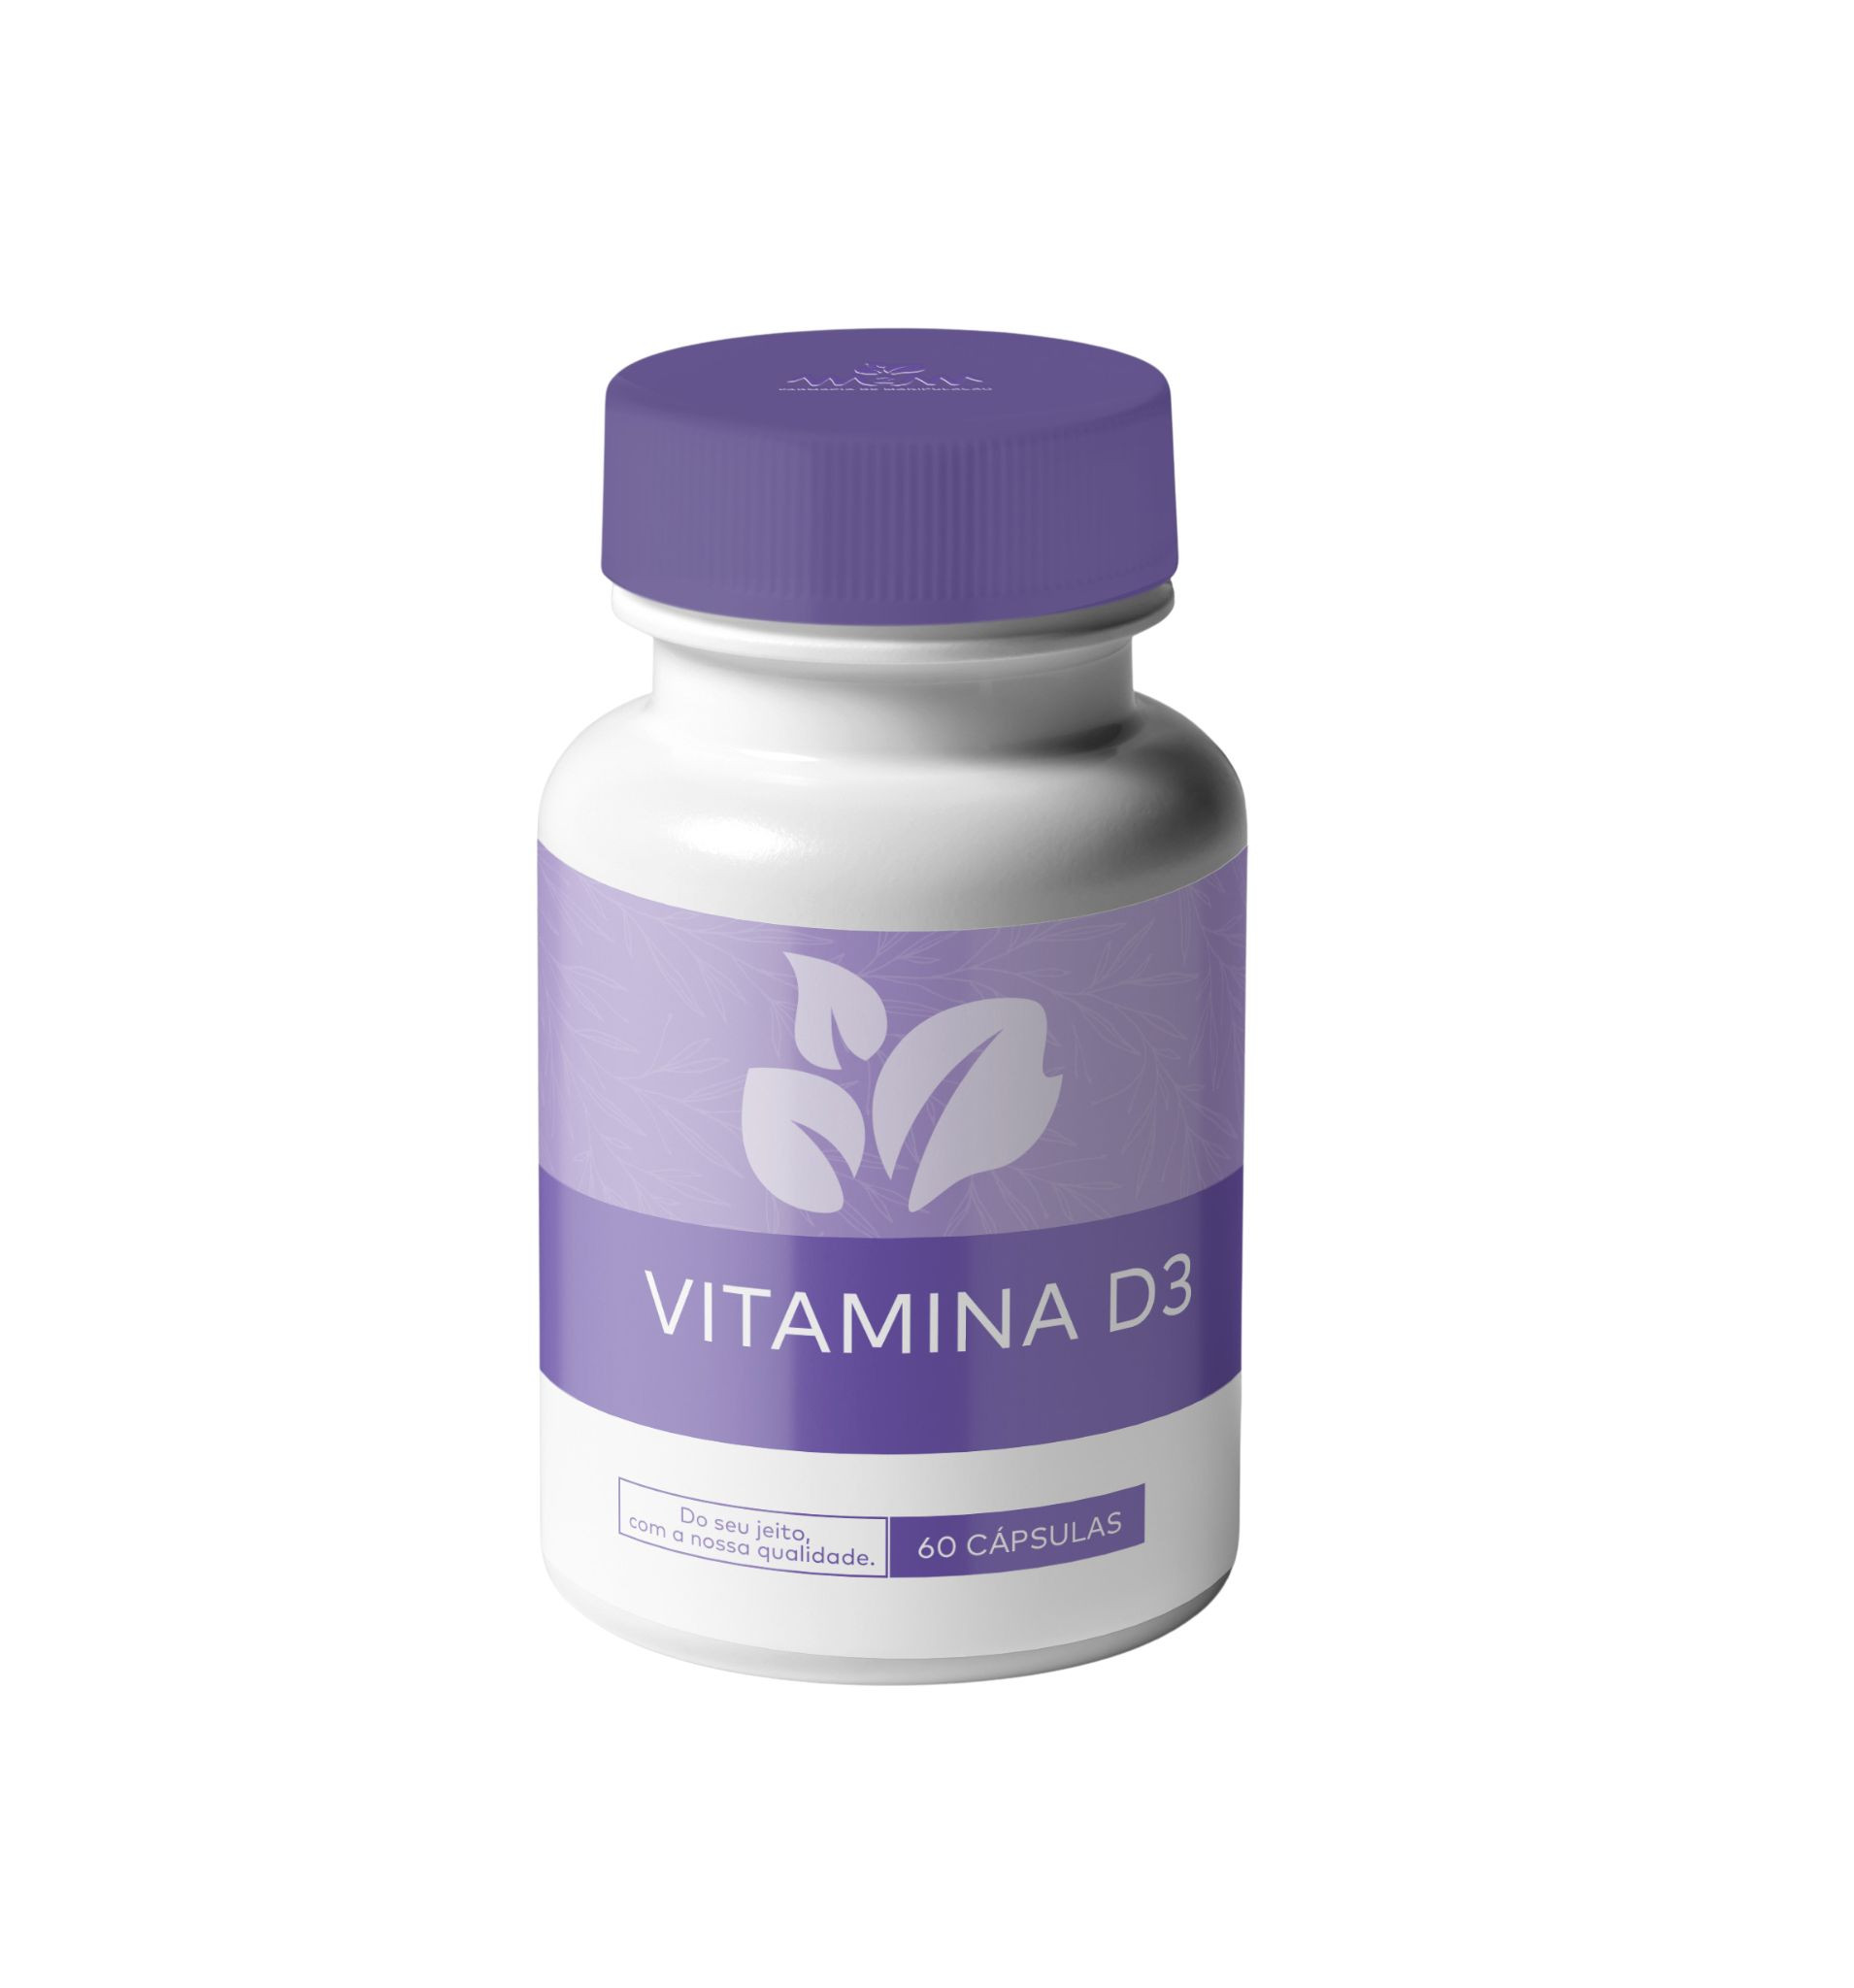 Vitamina D3 5.000UI 60 Cápsulas